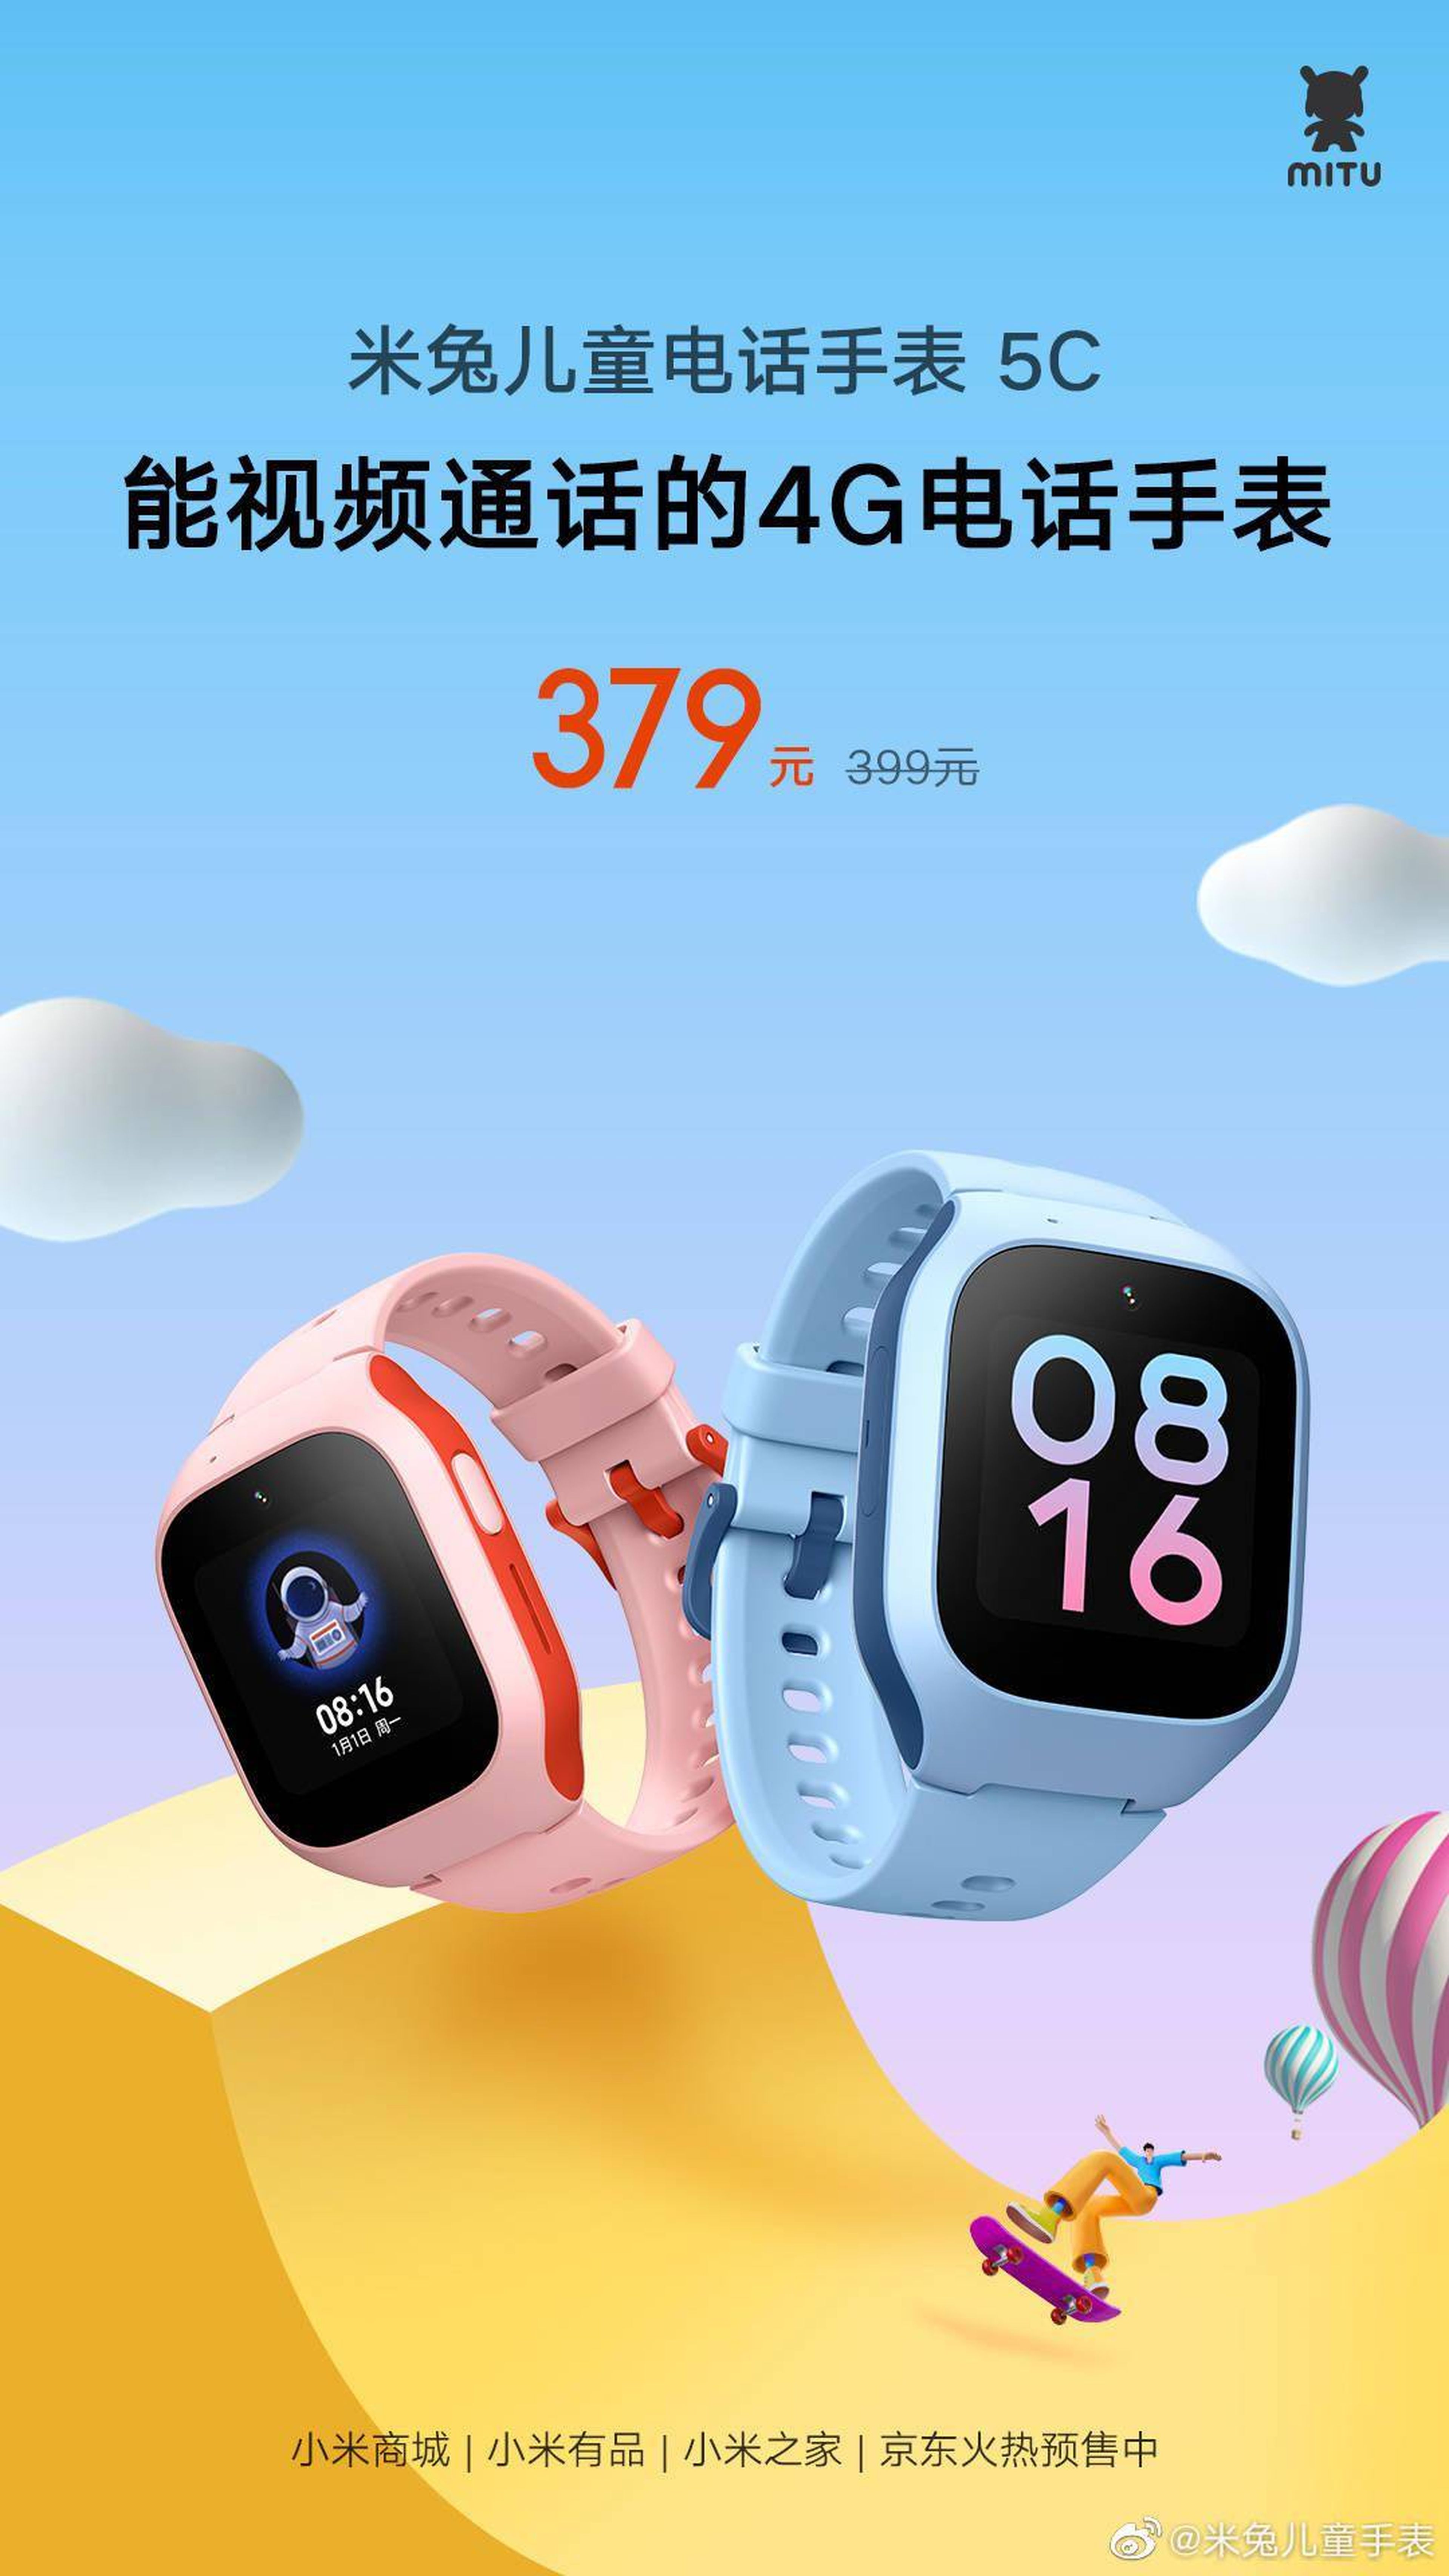 MITU Children's 4G Phone Watch 5C de Xiaomi